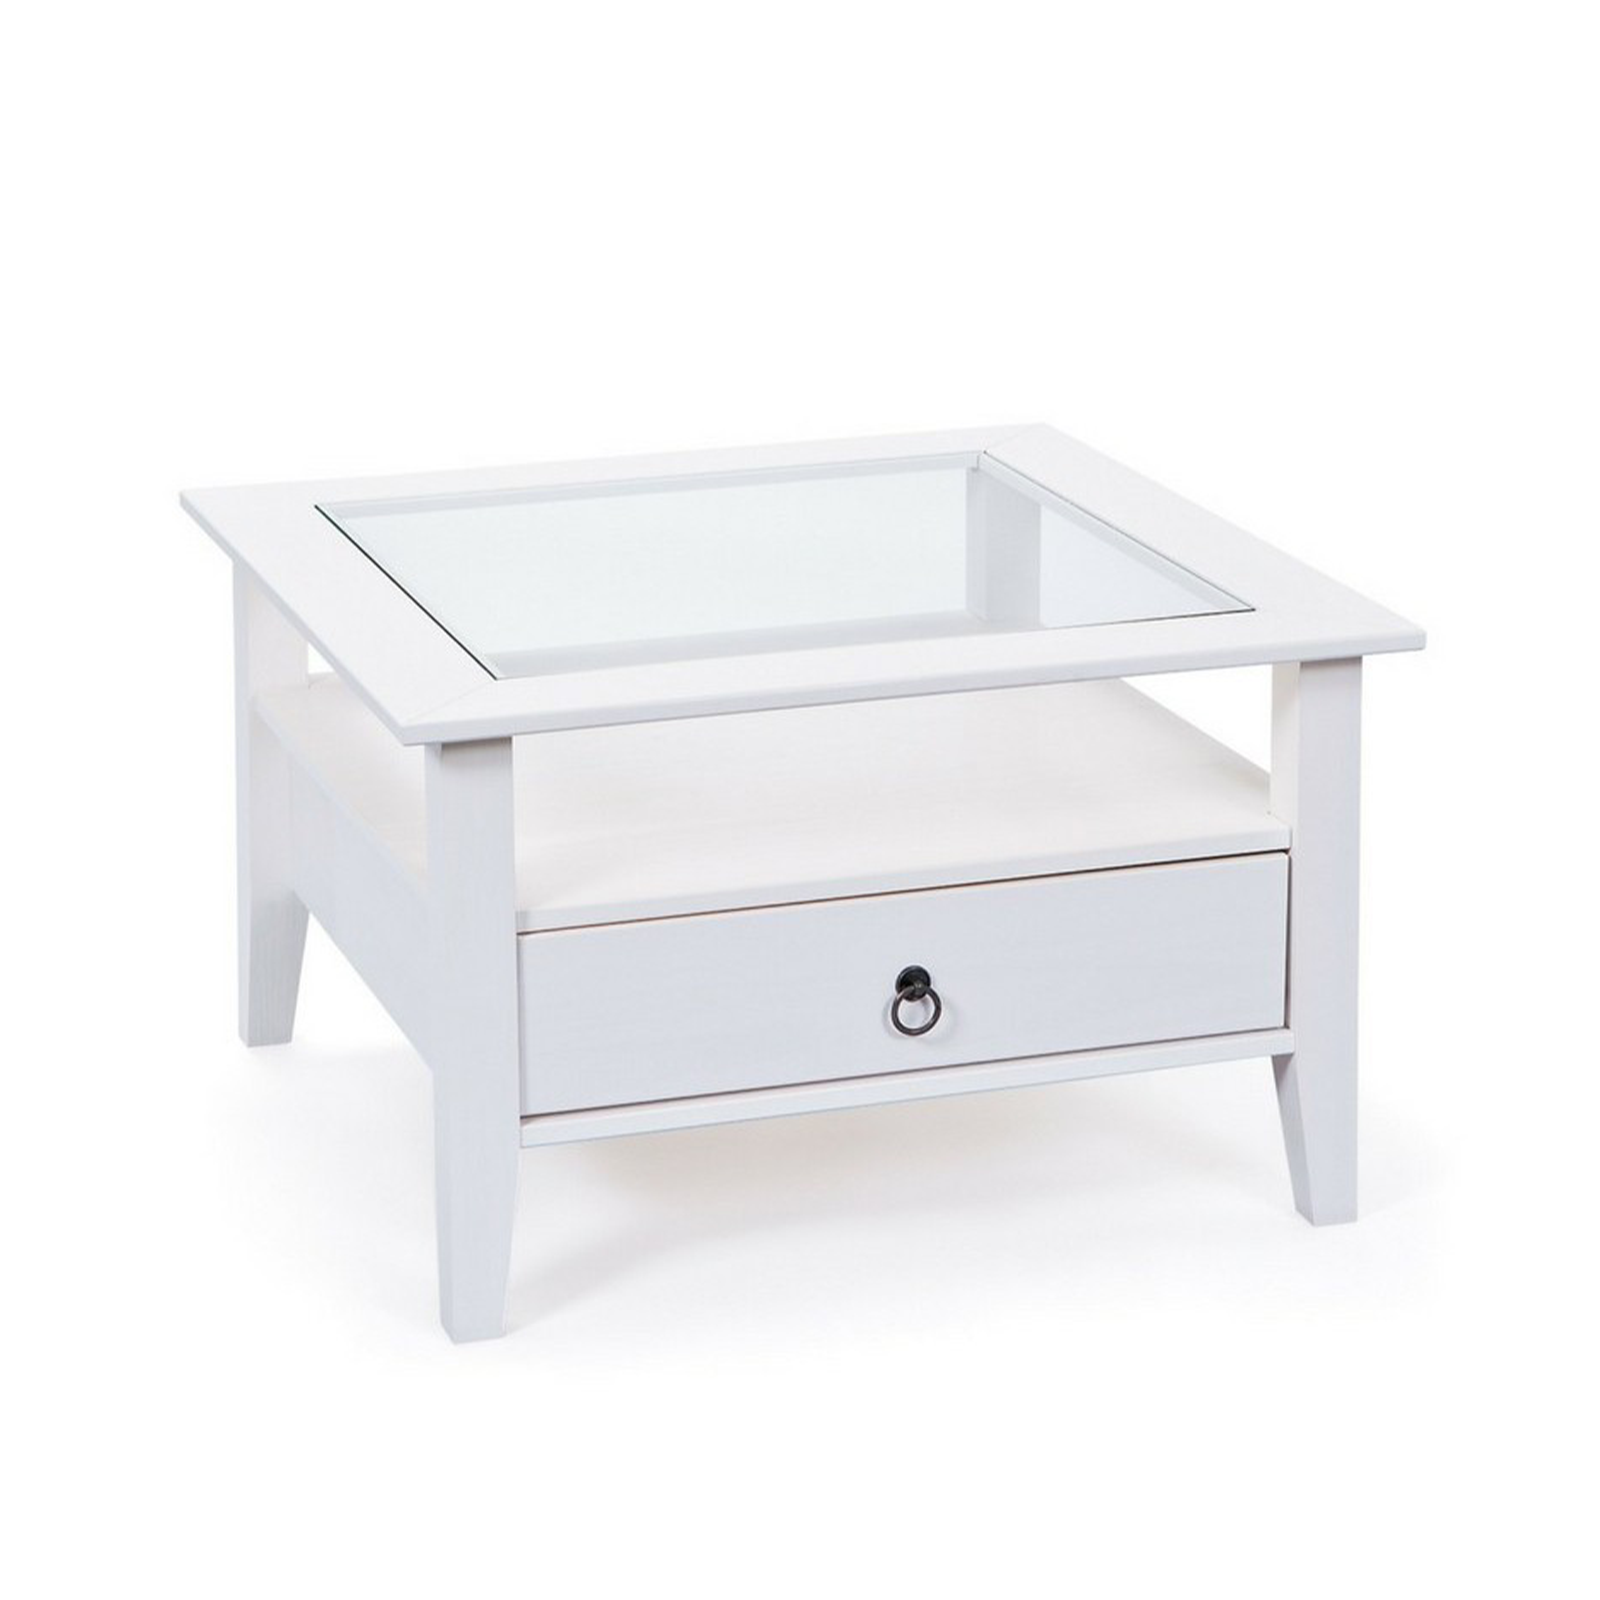 Tavolino basso Provence da soggiorno in legno massello bianco con ripiano in vetro cm 75x75 45h